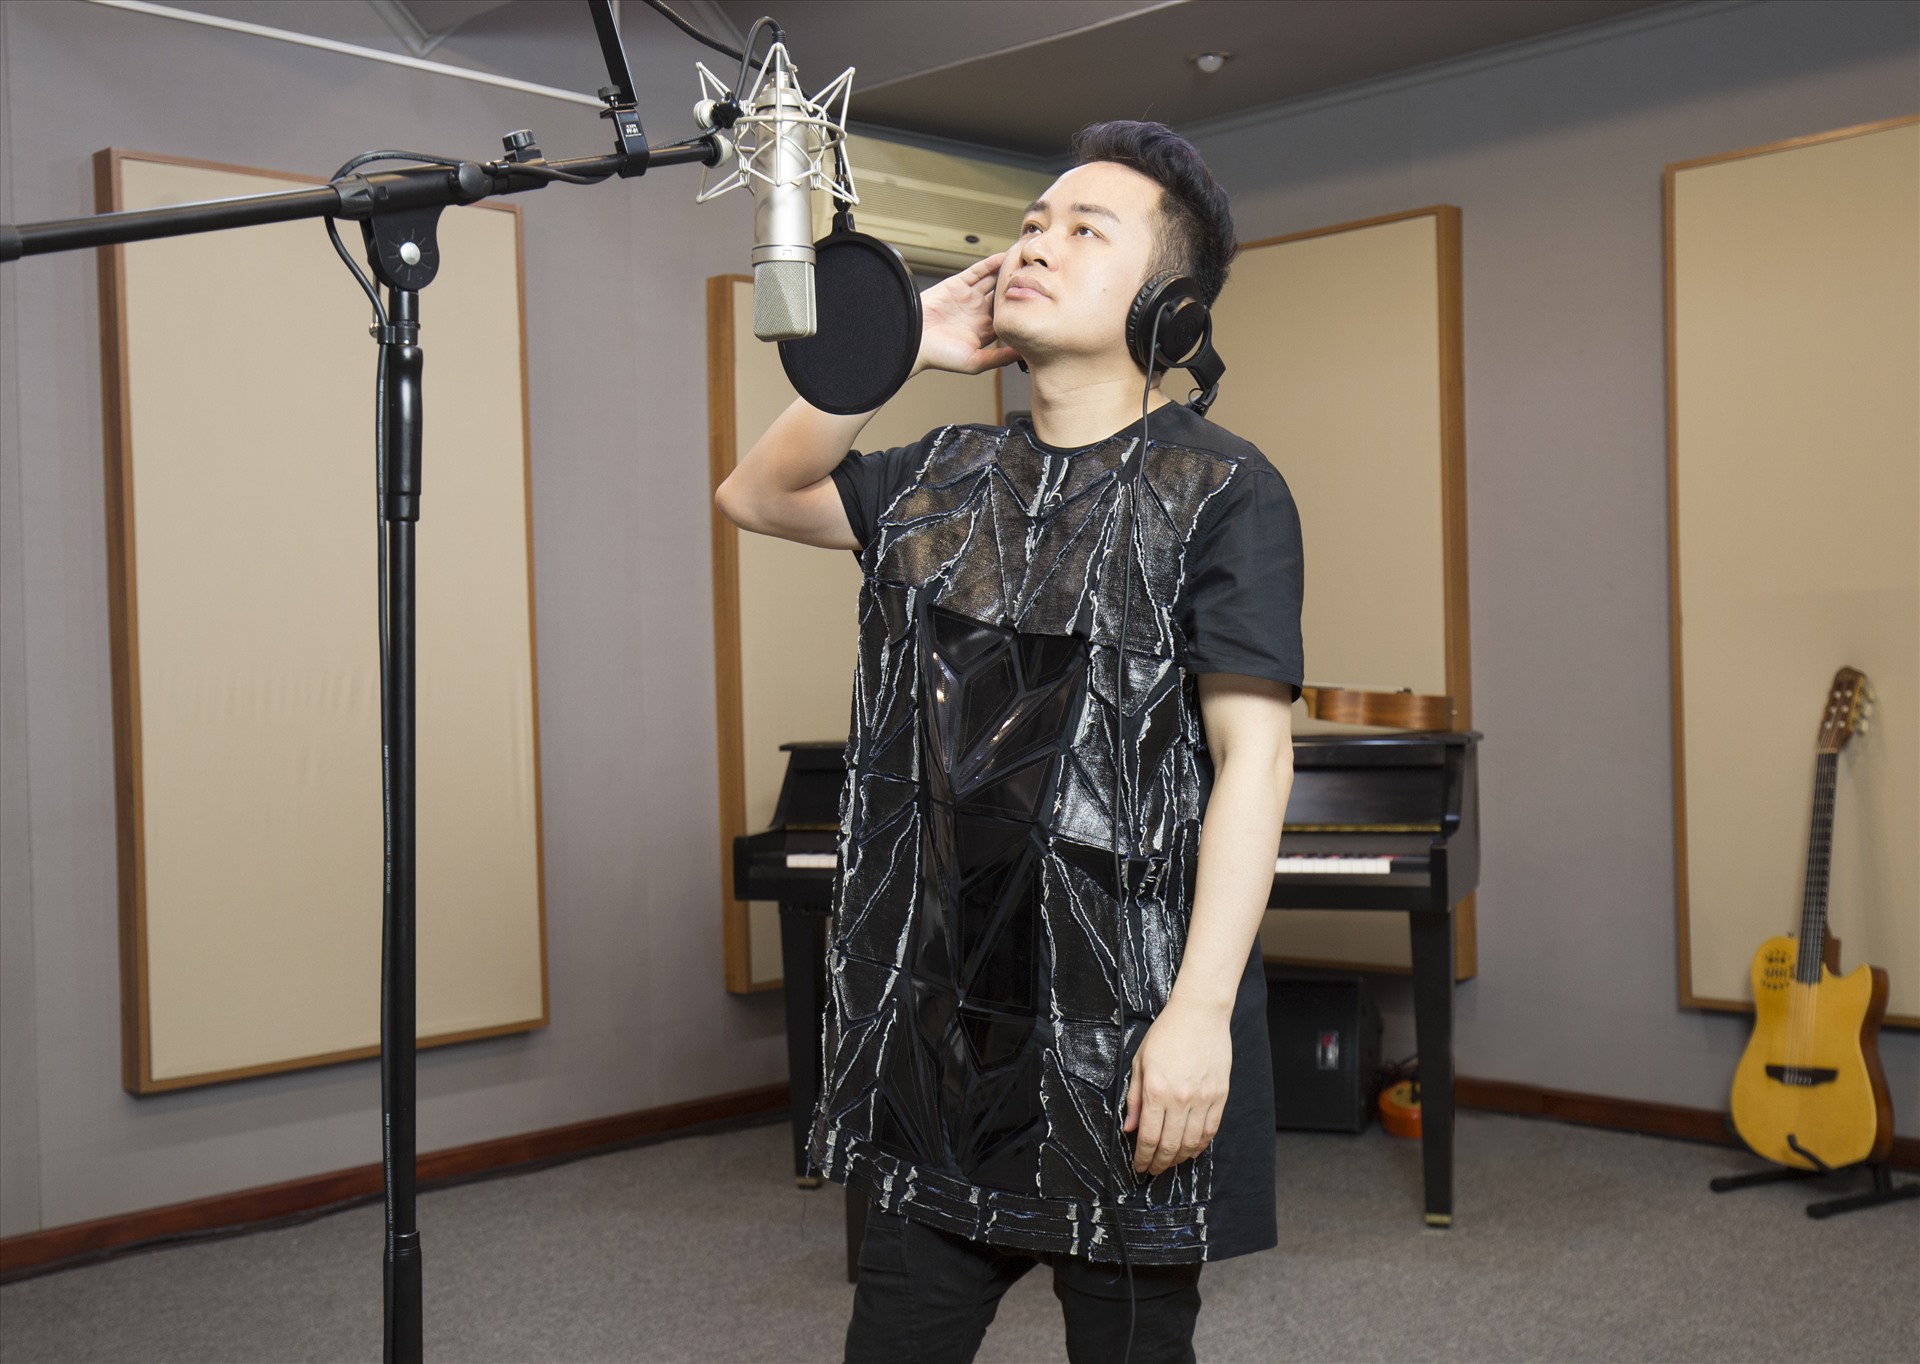 Tùng Dương thực hiện sản phẩm âm nhạc kết hợp với các nghệ sĩ theo phương thức online. Ảnh: Nhân vật cung cấp.